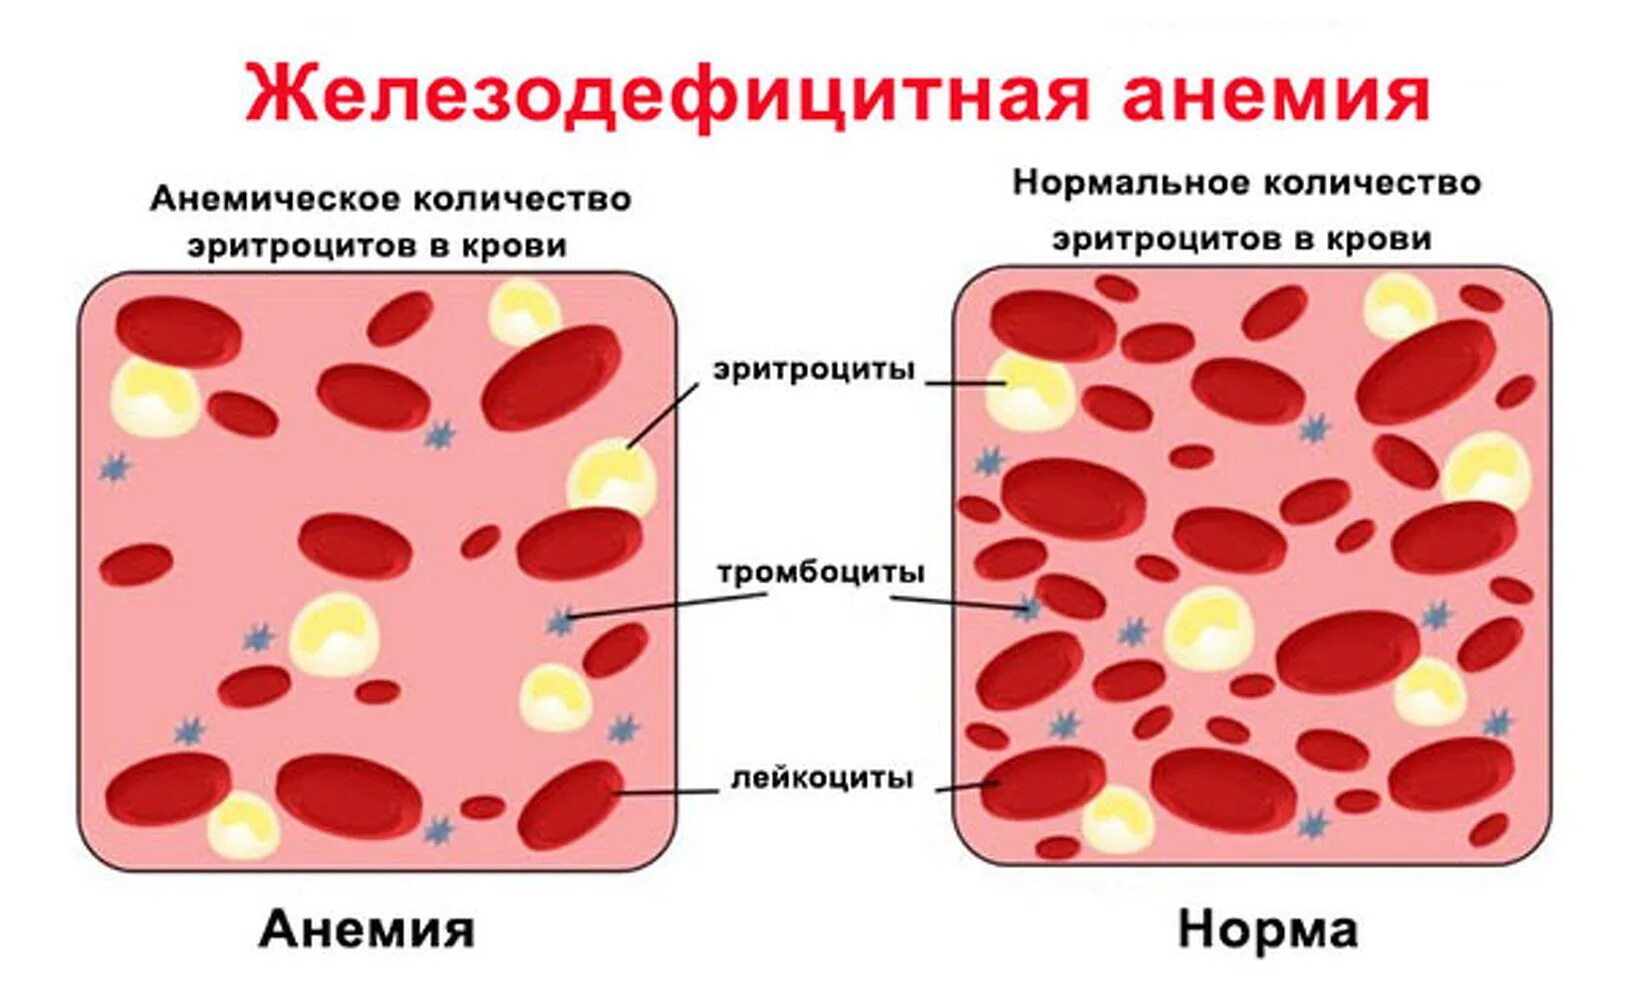 Железо дефицитная анемия. Железная дефицитная анемия. Эритроциты при железодефицитной анемии у детей. Эритроциты при железодефицитной анемии. Основные симптомы при железодефицитной анемии.